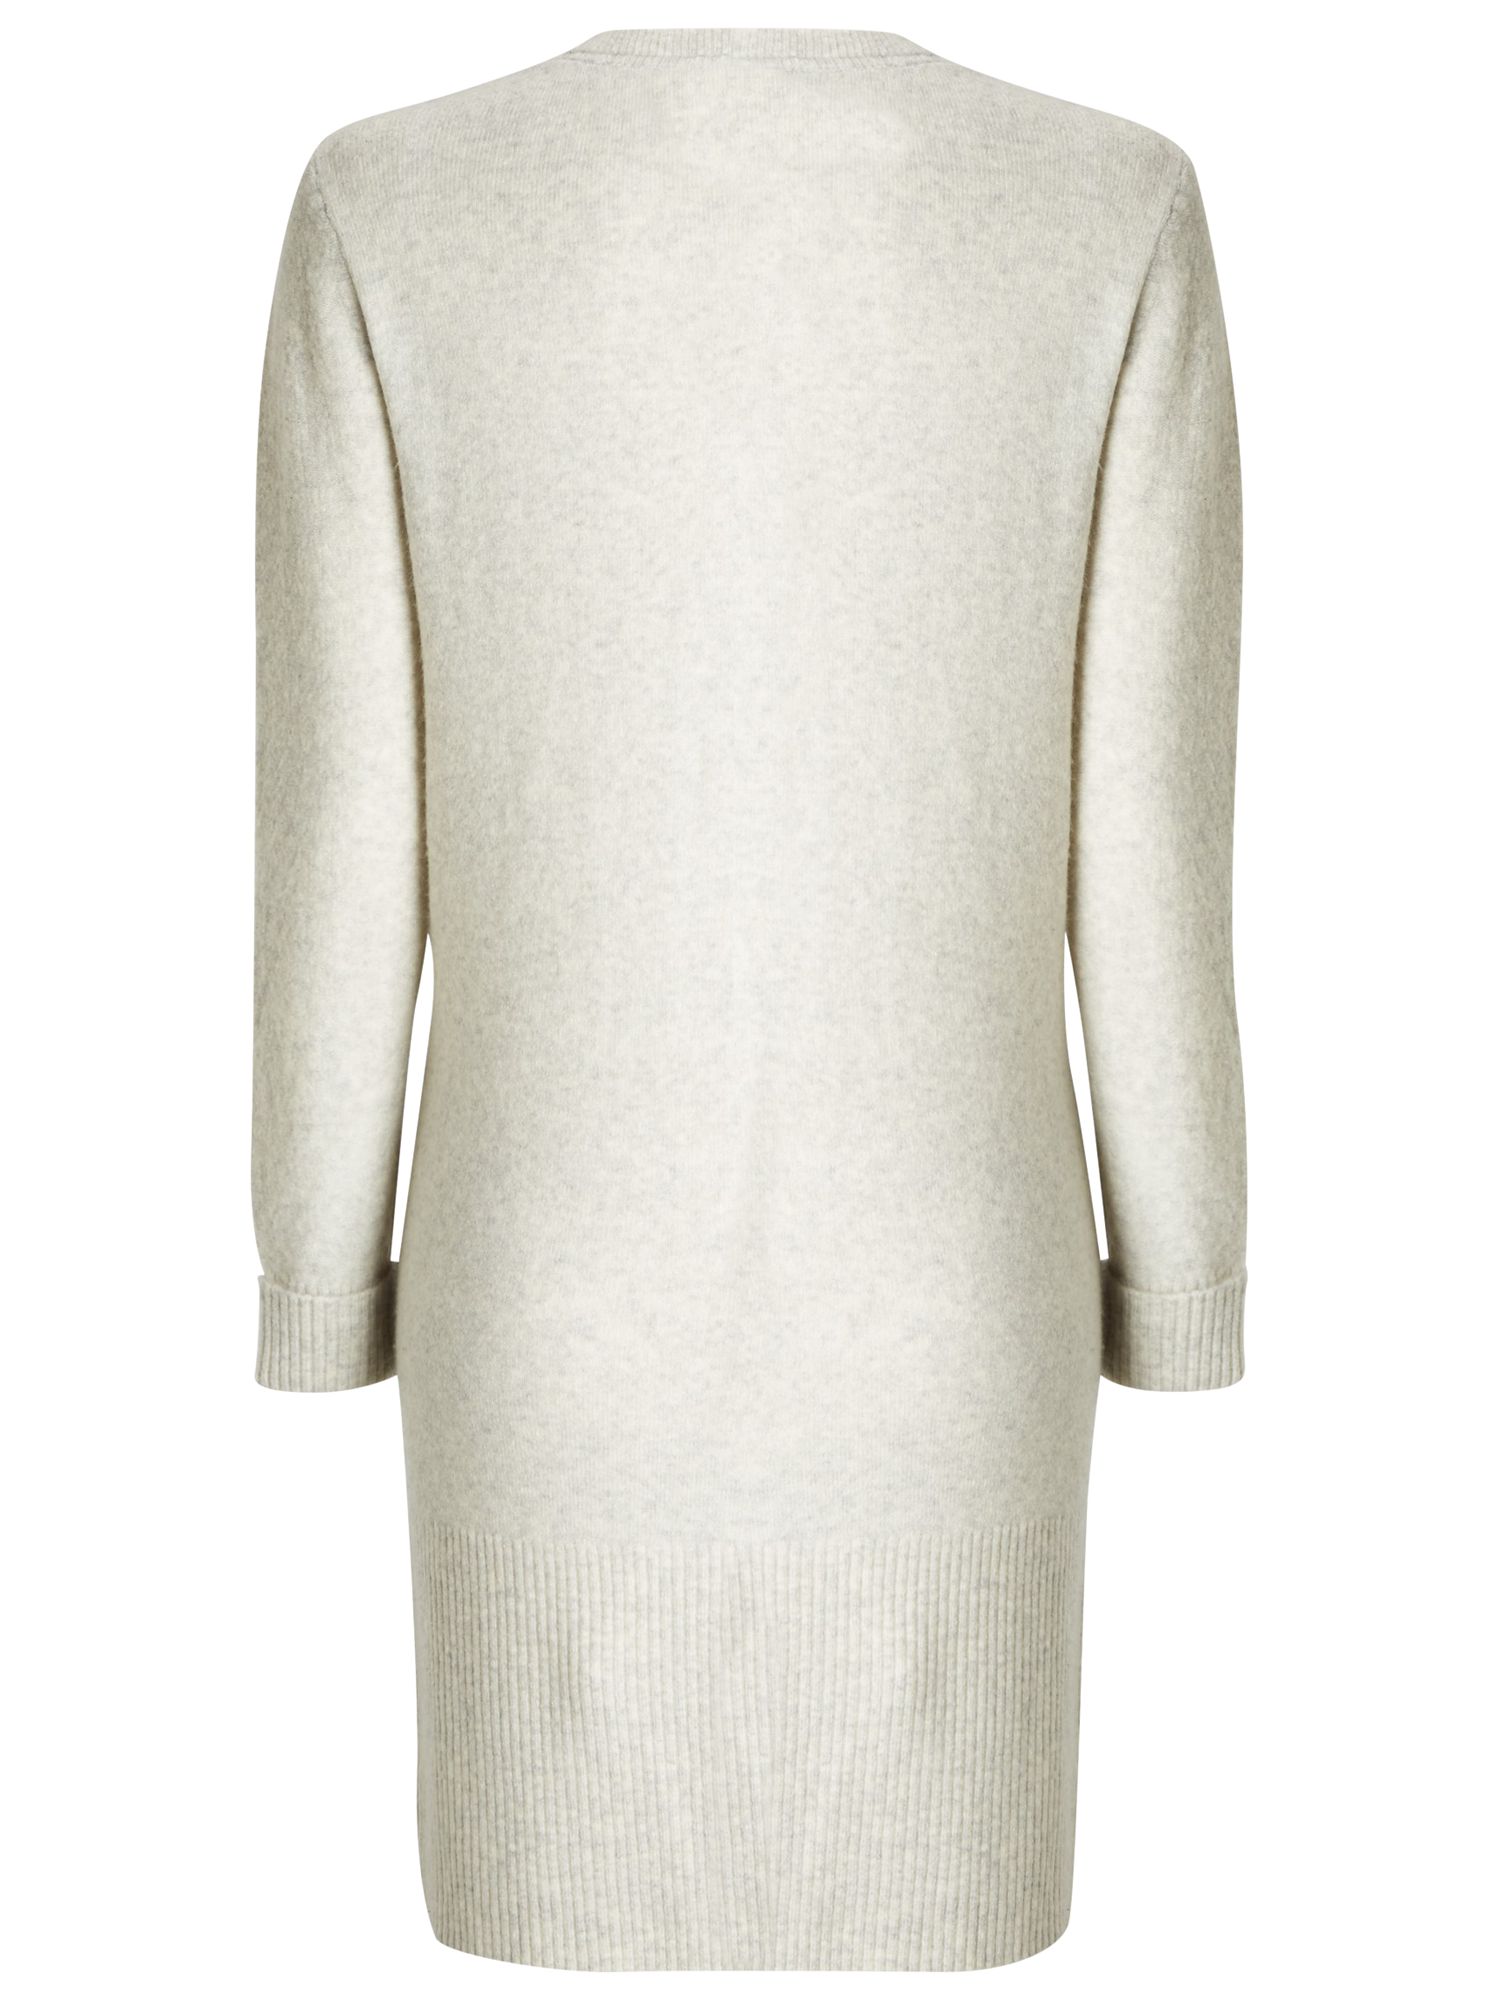 white stuff knitted dress